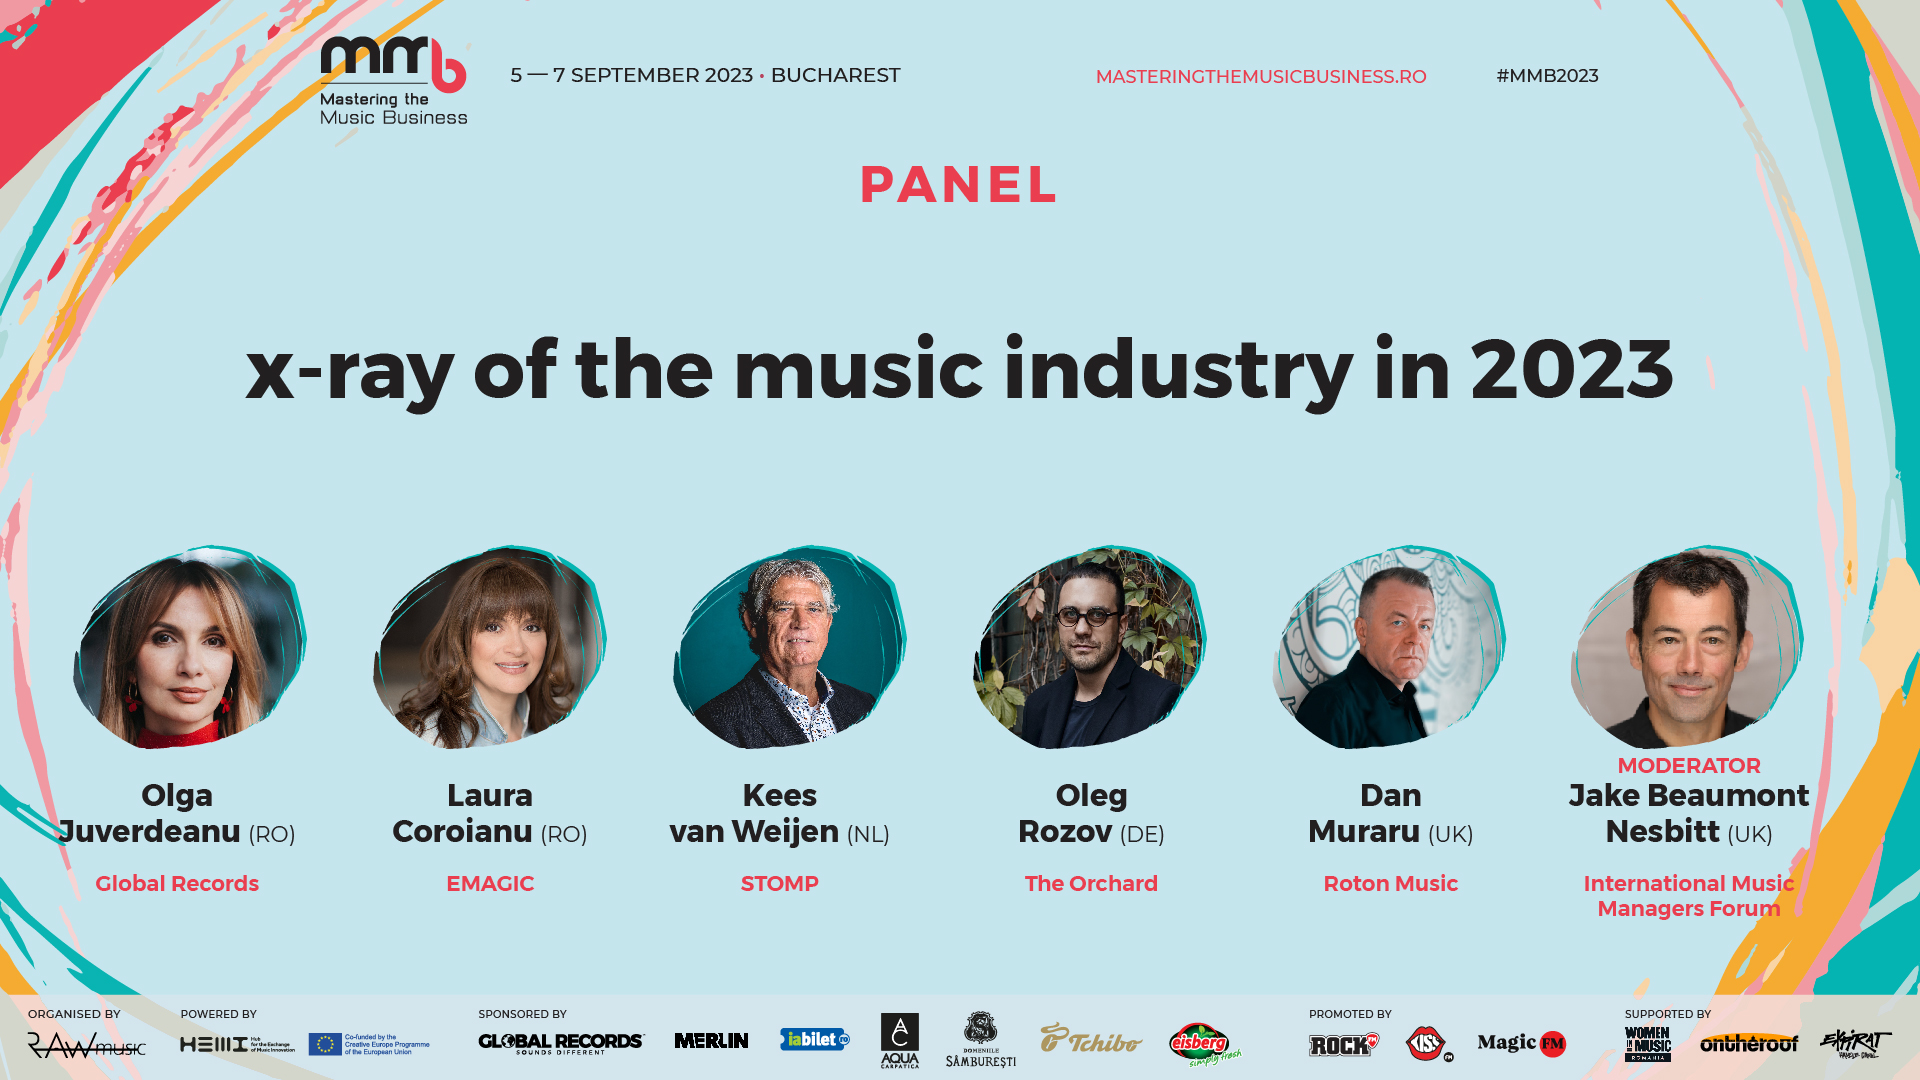 Secretele unui festival de succes, gestionarea stresului, importanța incluziunii, rolul inteligenței artificiale în muzică și impactul industriei în turism și economie - câteva dintre subiectele dezbătute la conferința MMB 2023